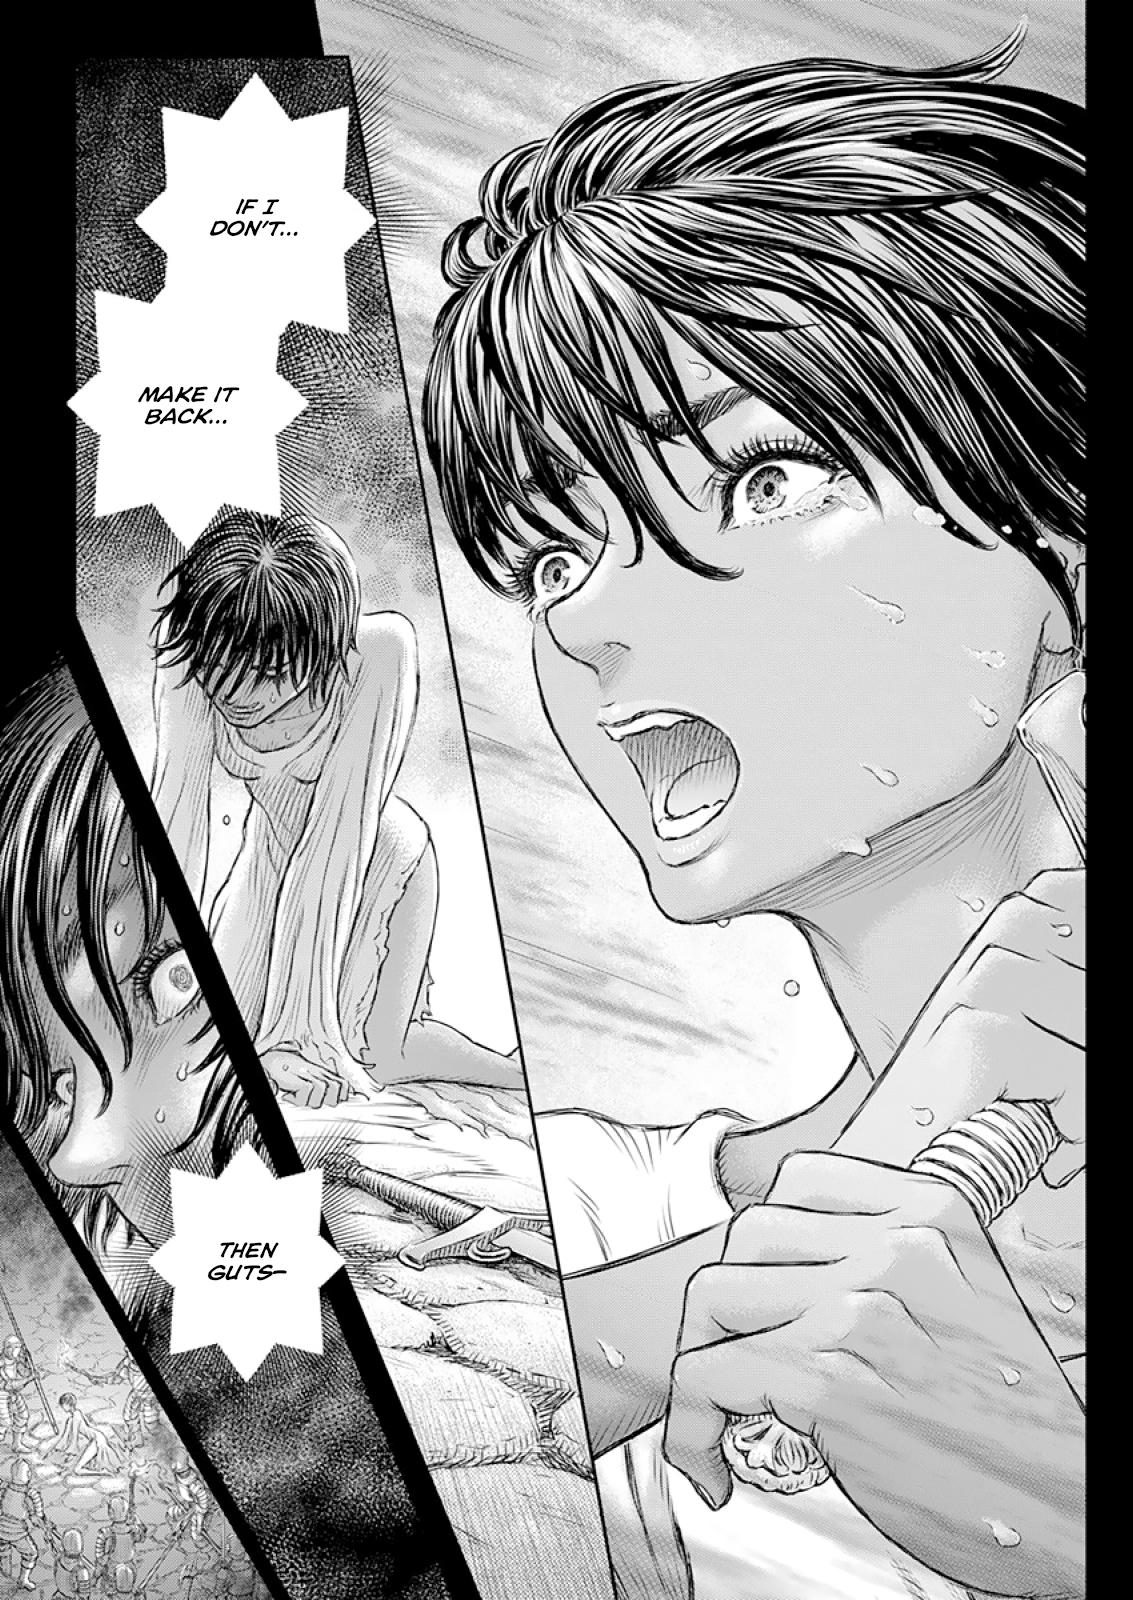 Berserk Manga Chapter 372 image 18